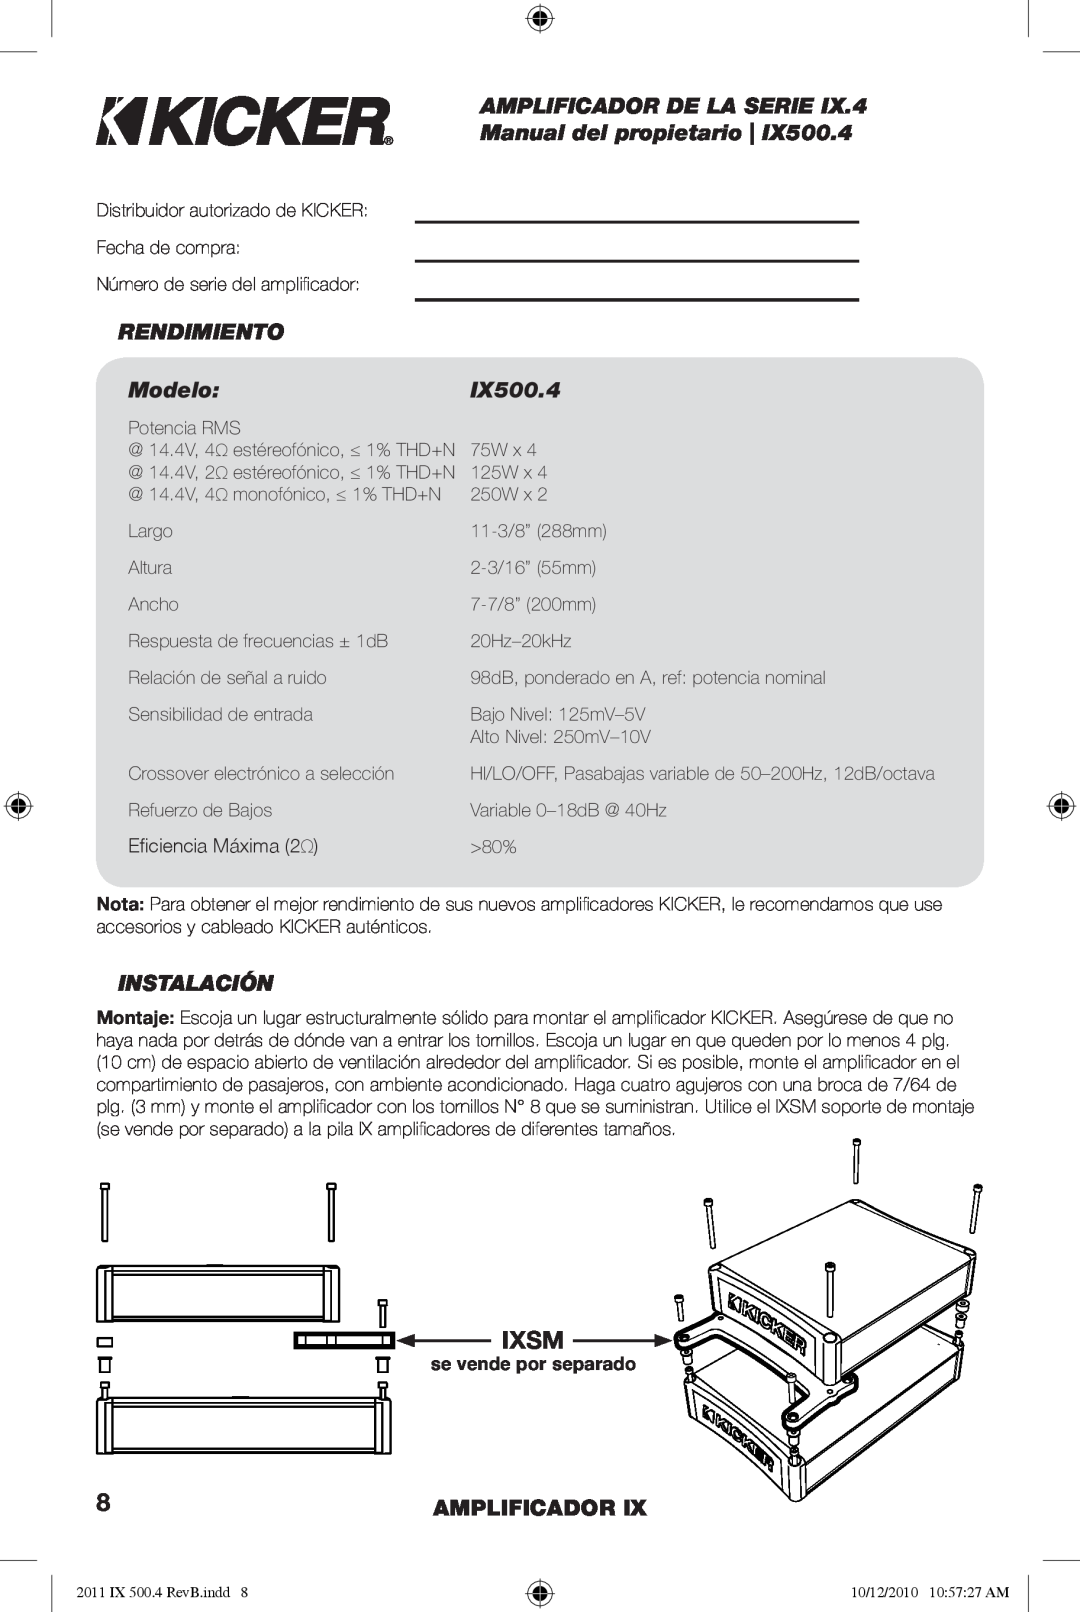 Kicker IX500.4 manual AMPLIFICADOR DE LA SERIE Manual del propietario, RENDIMIENTO Modelo, Instalación, Amplificador, Ixsm 